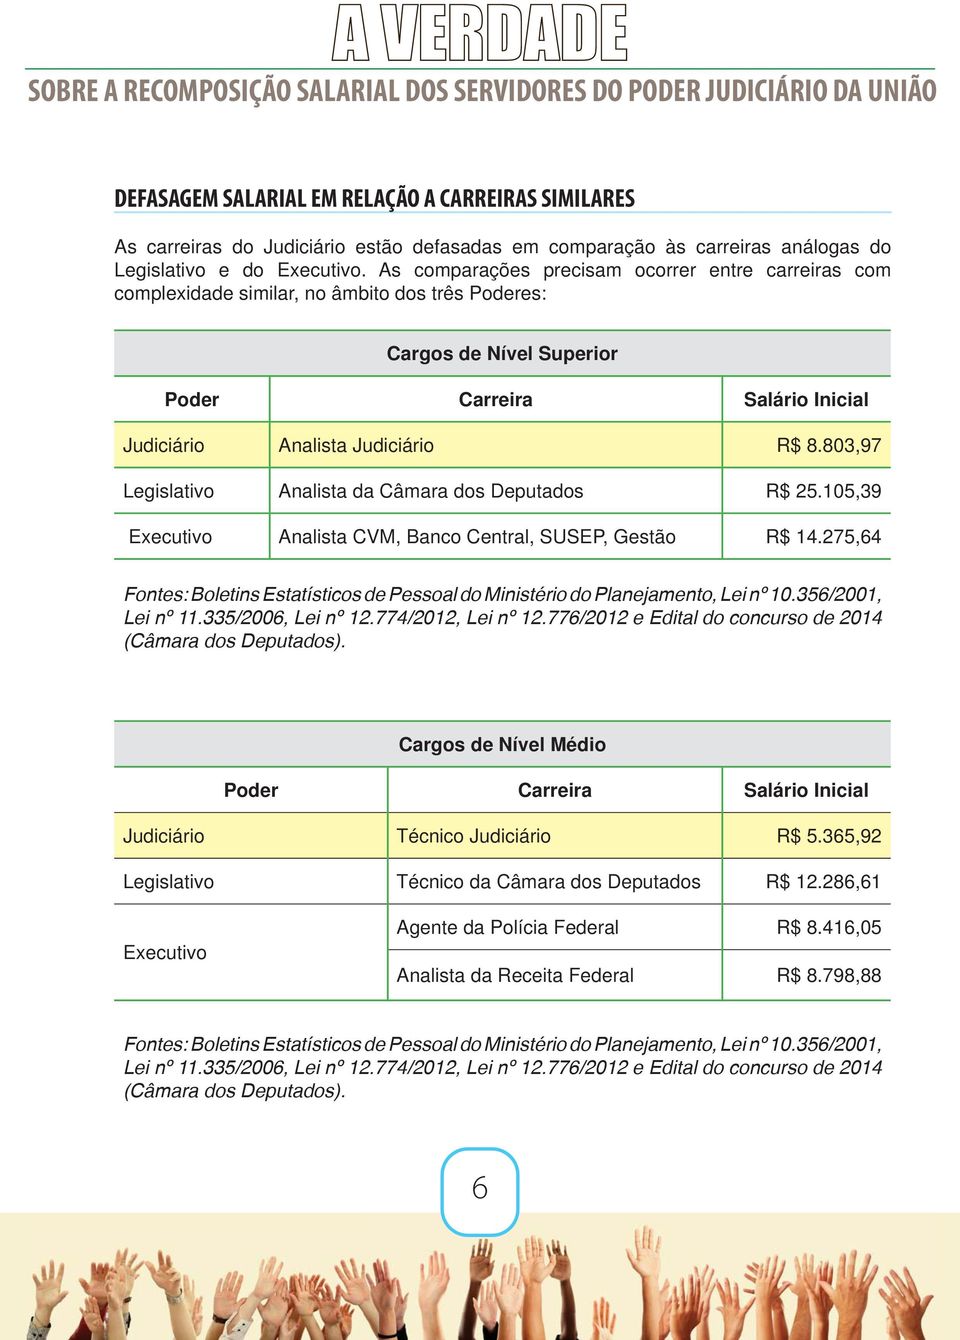 803,97 Legislativo Analista da Câmara dos Deputados R$ 25.105,39 Executivo Analista CVM, Banco Central, SUSEP, Gestão R$ 14.